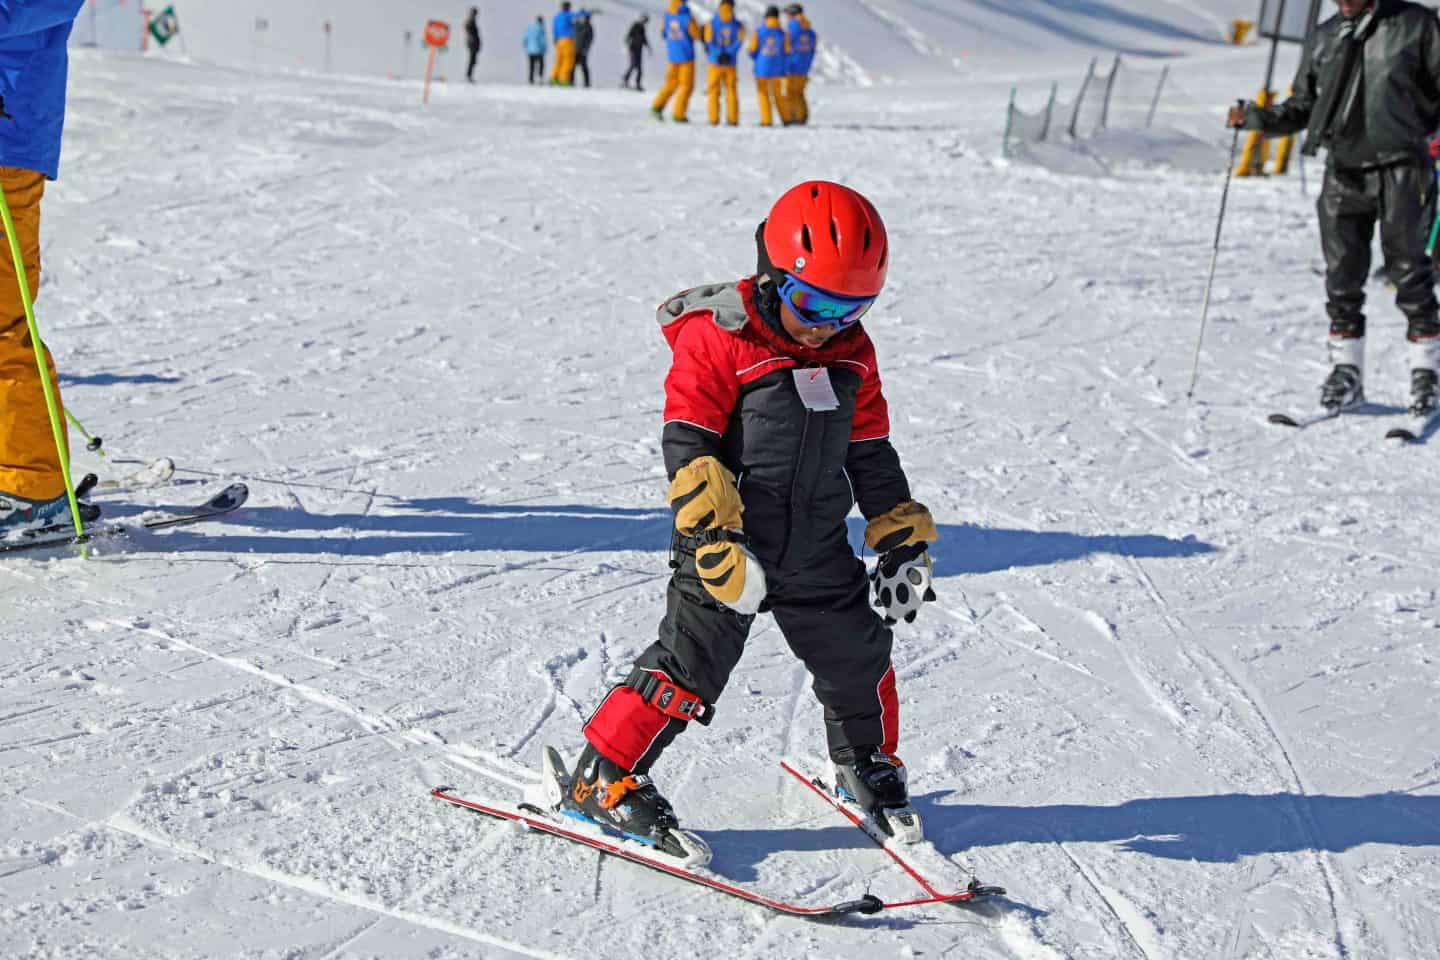 ski trip with kids